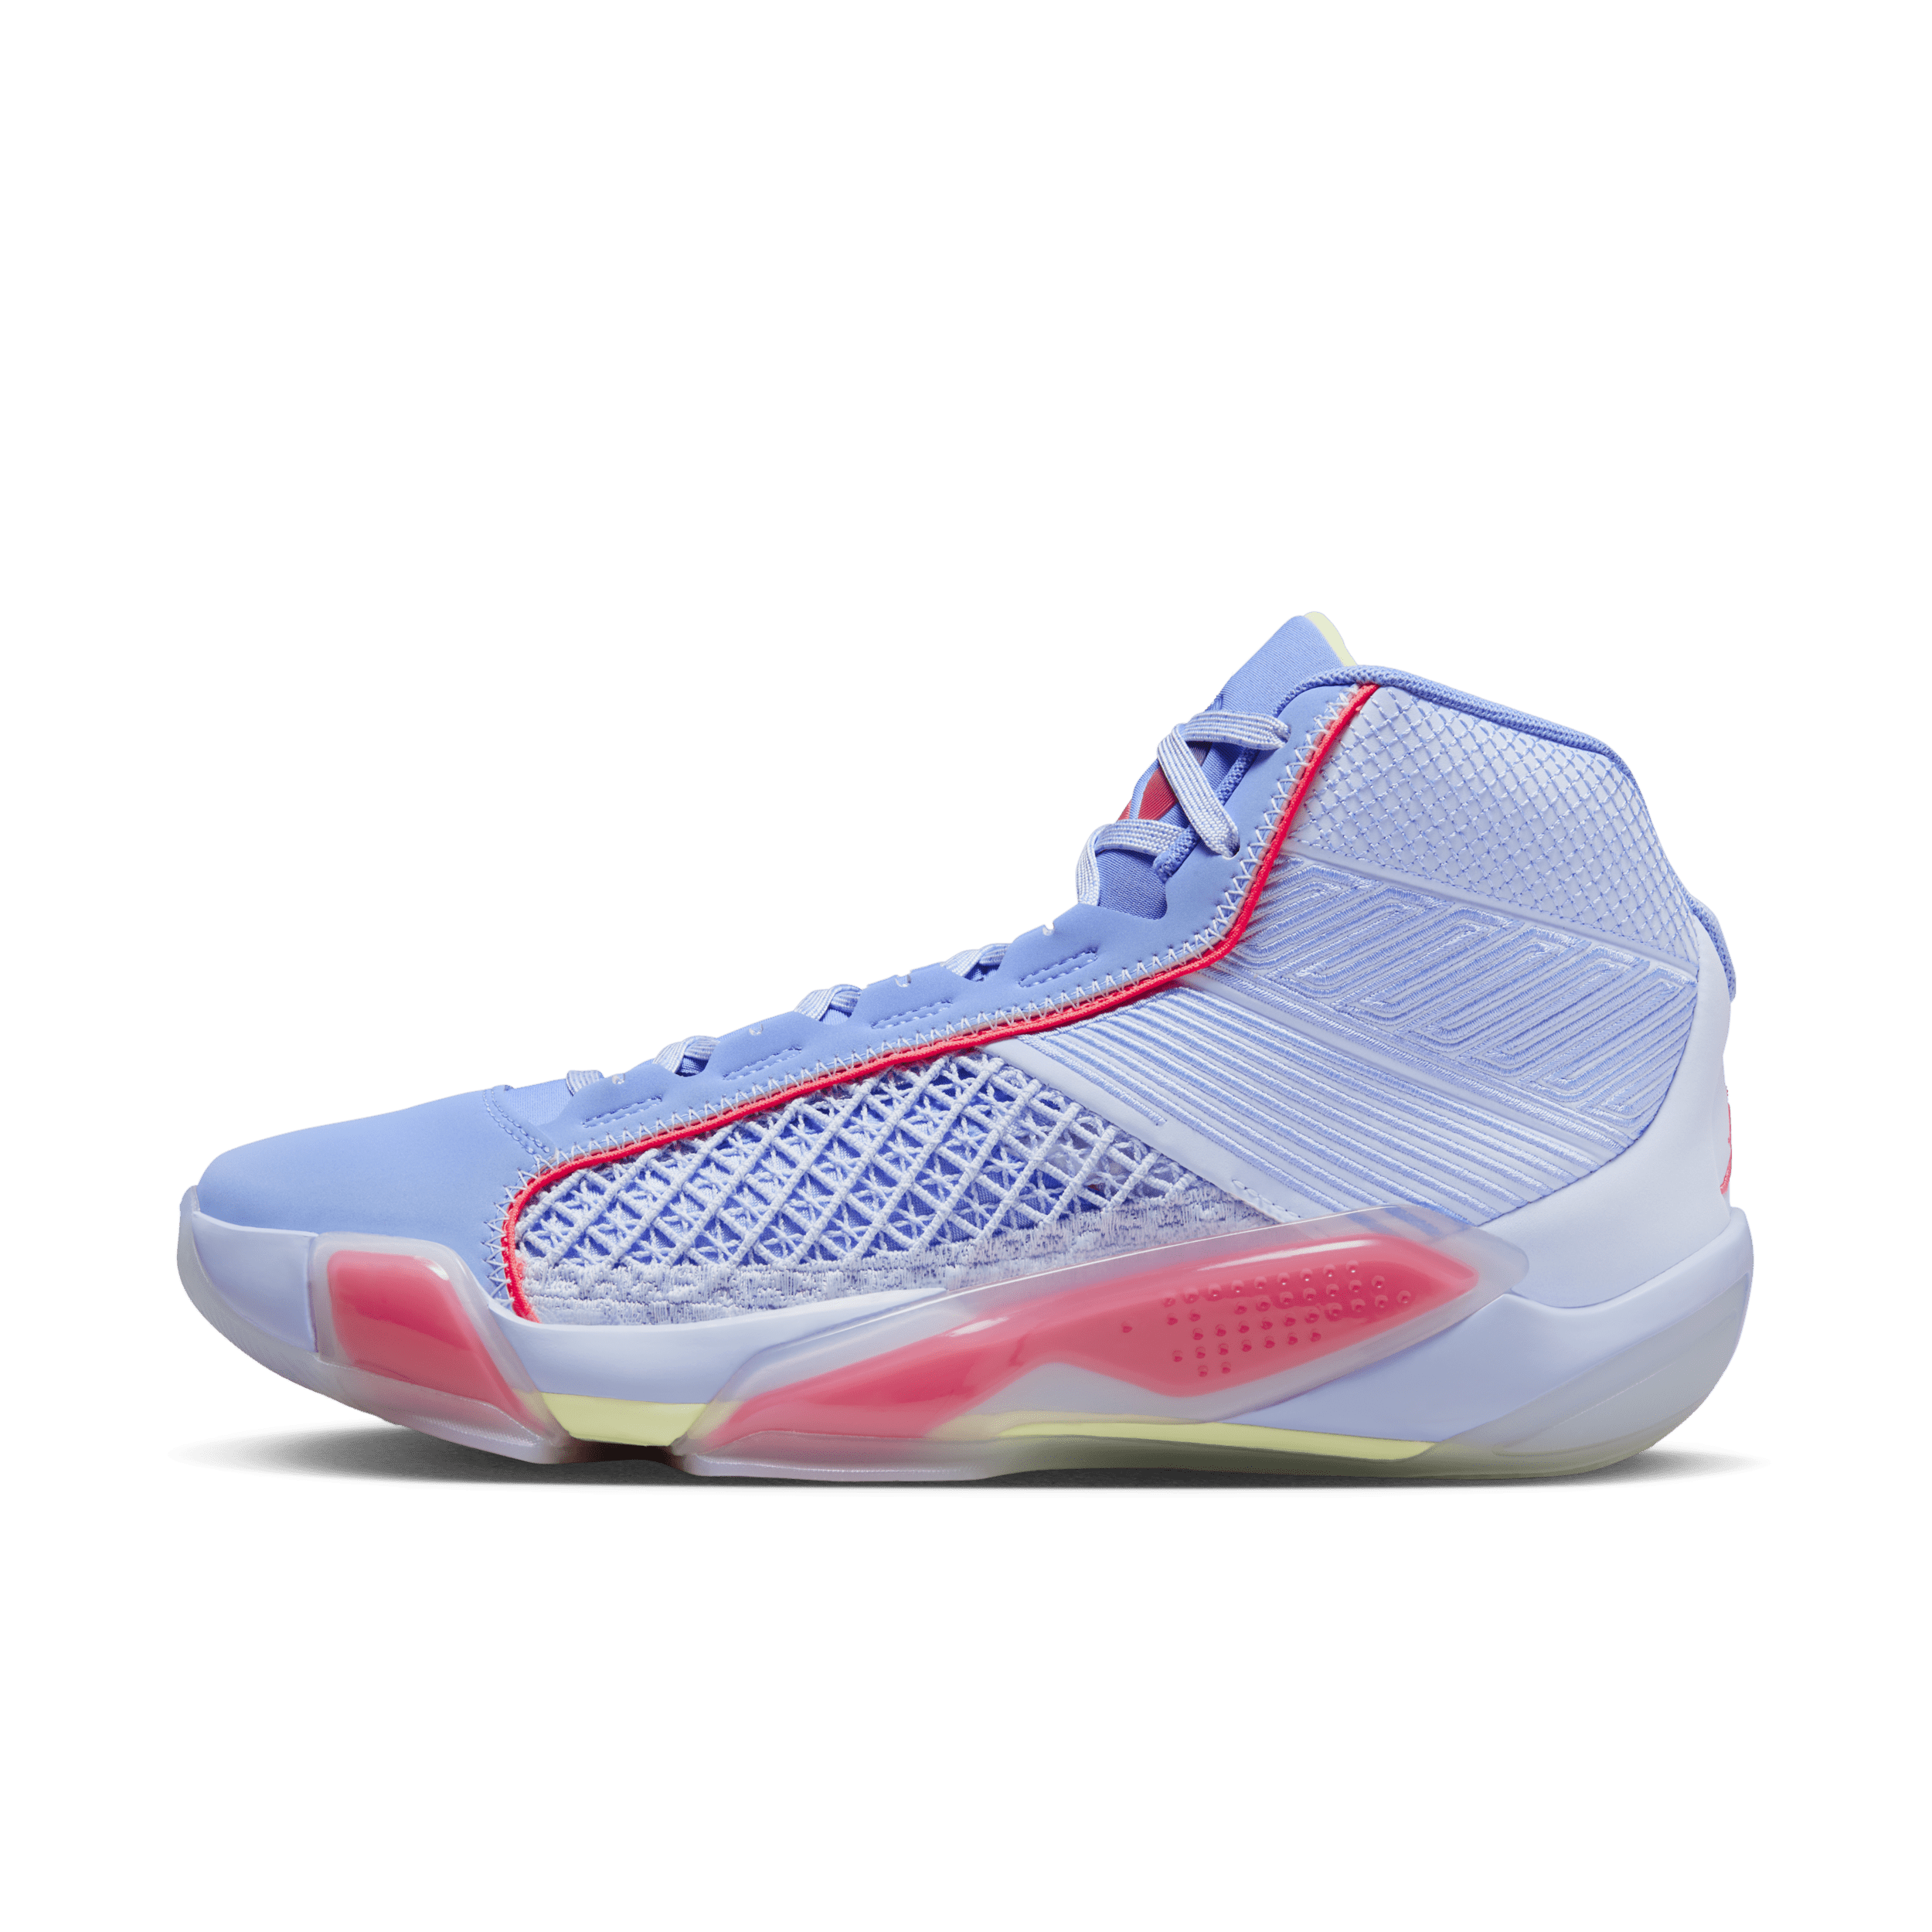 Air Jordan XXXVIII basketbalschoenen - Blauw